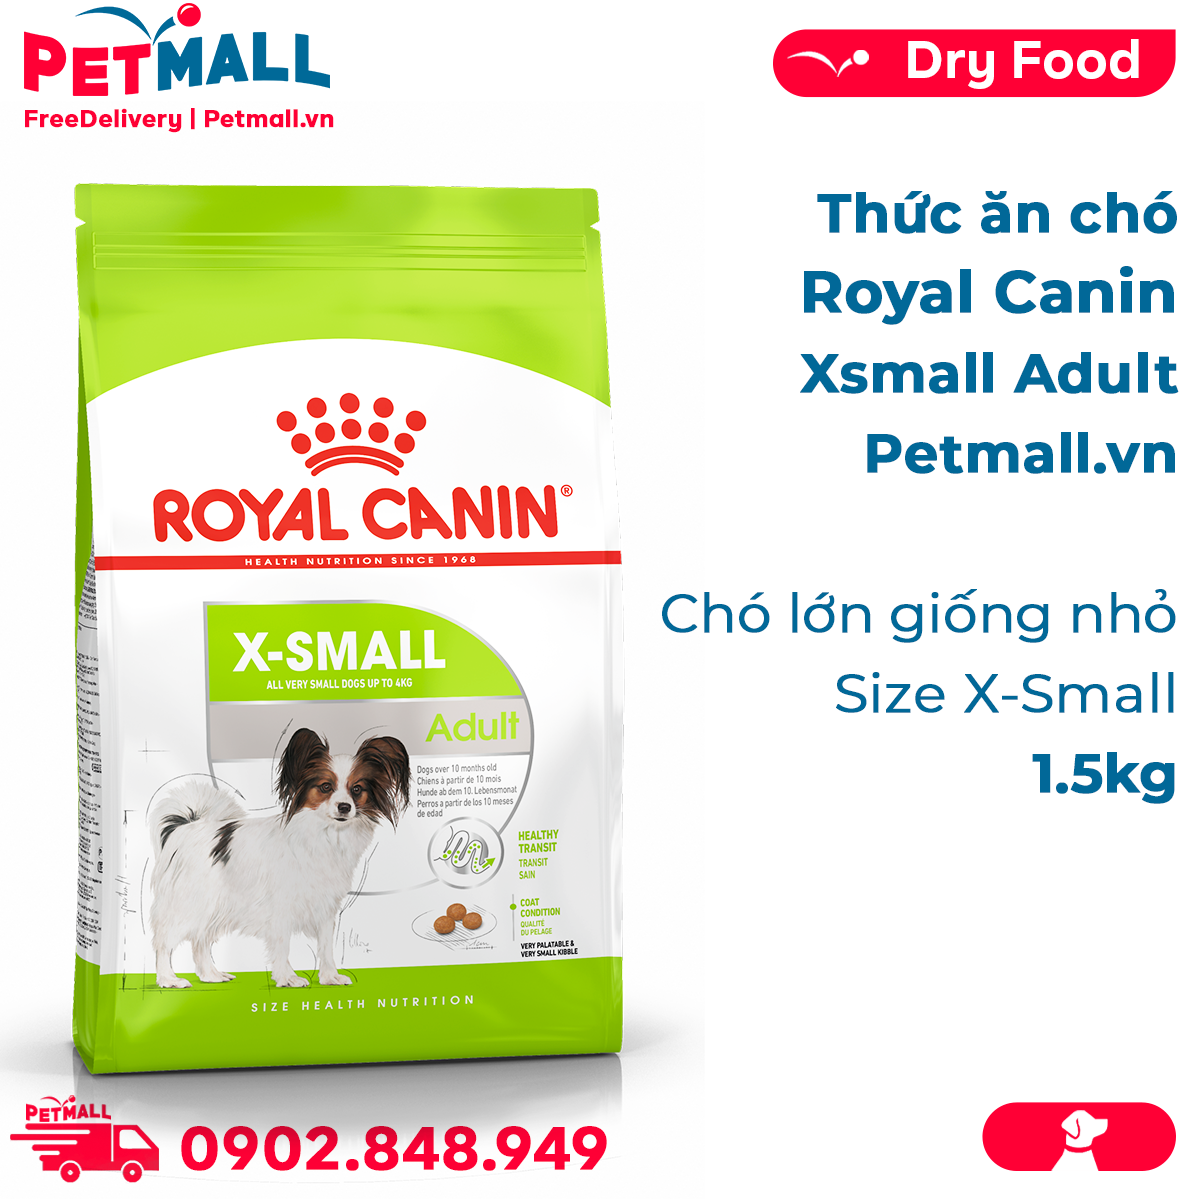 Thức ăn chó Royal Canin Xsmall Adult 1.5kg - Chó lớn giống nhỏ size X